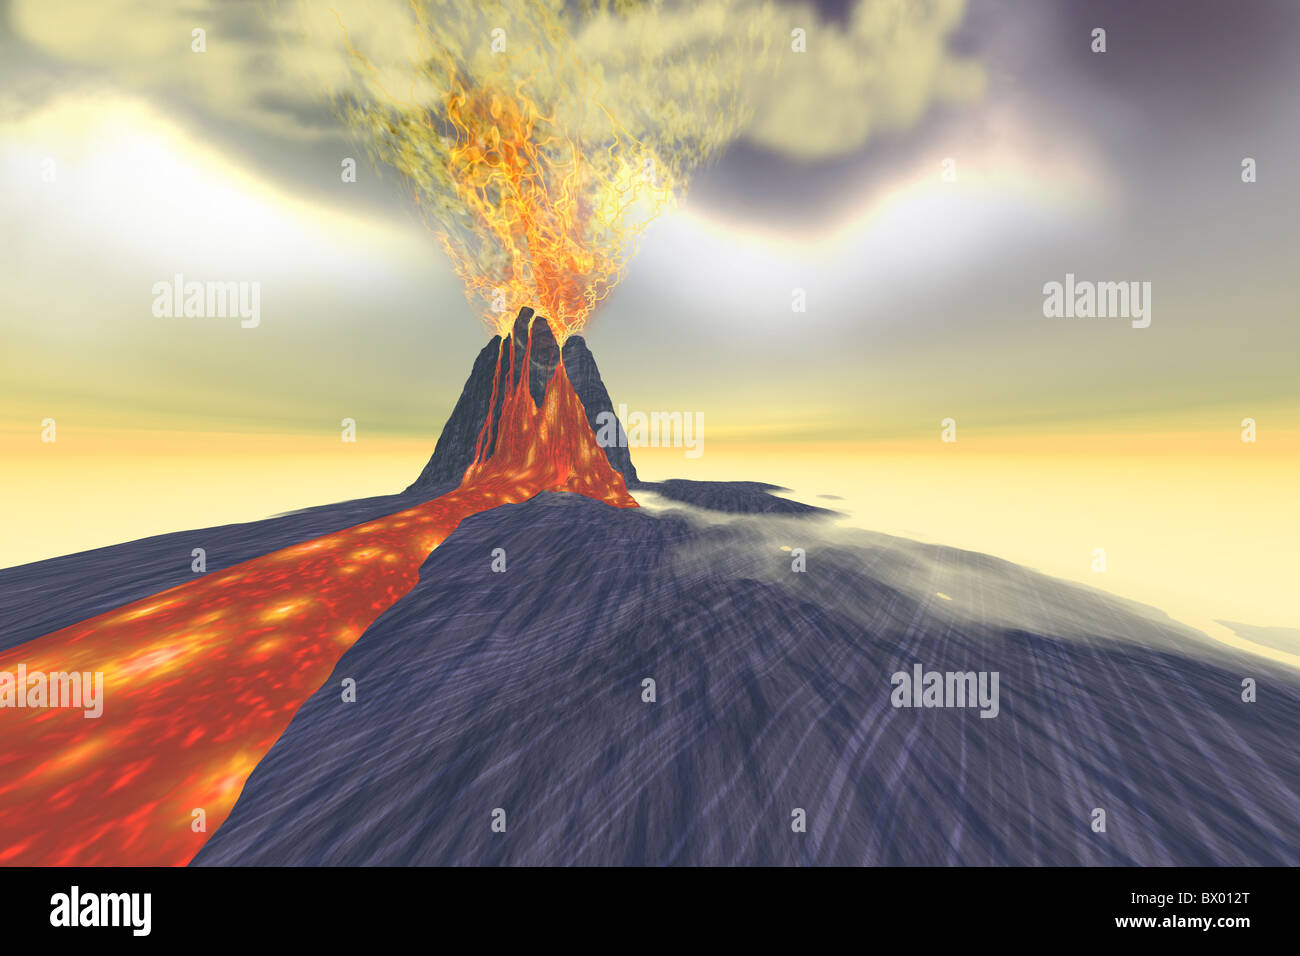 Vulkanische - ein Vulkan ausbricht mit Lava, Feuer und Rauch. Stockfoto